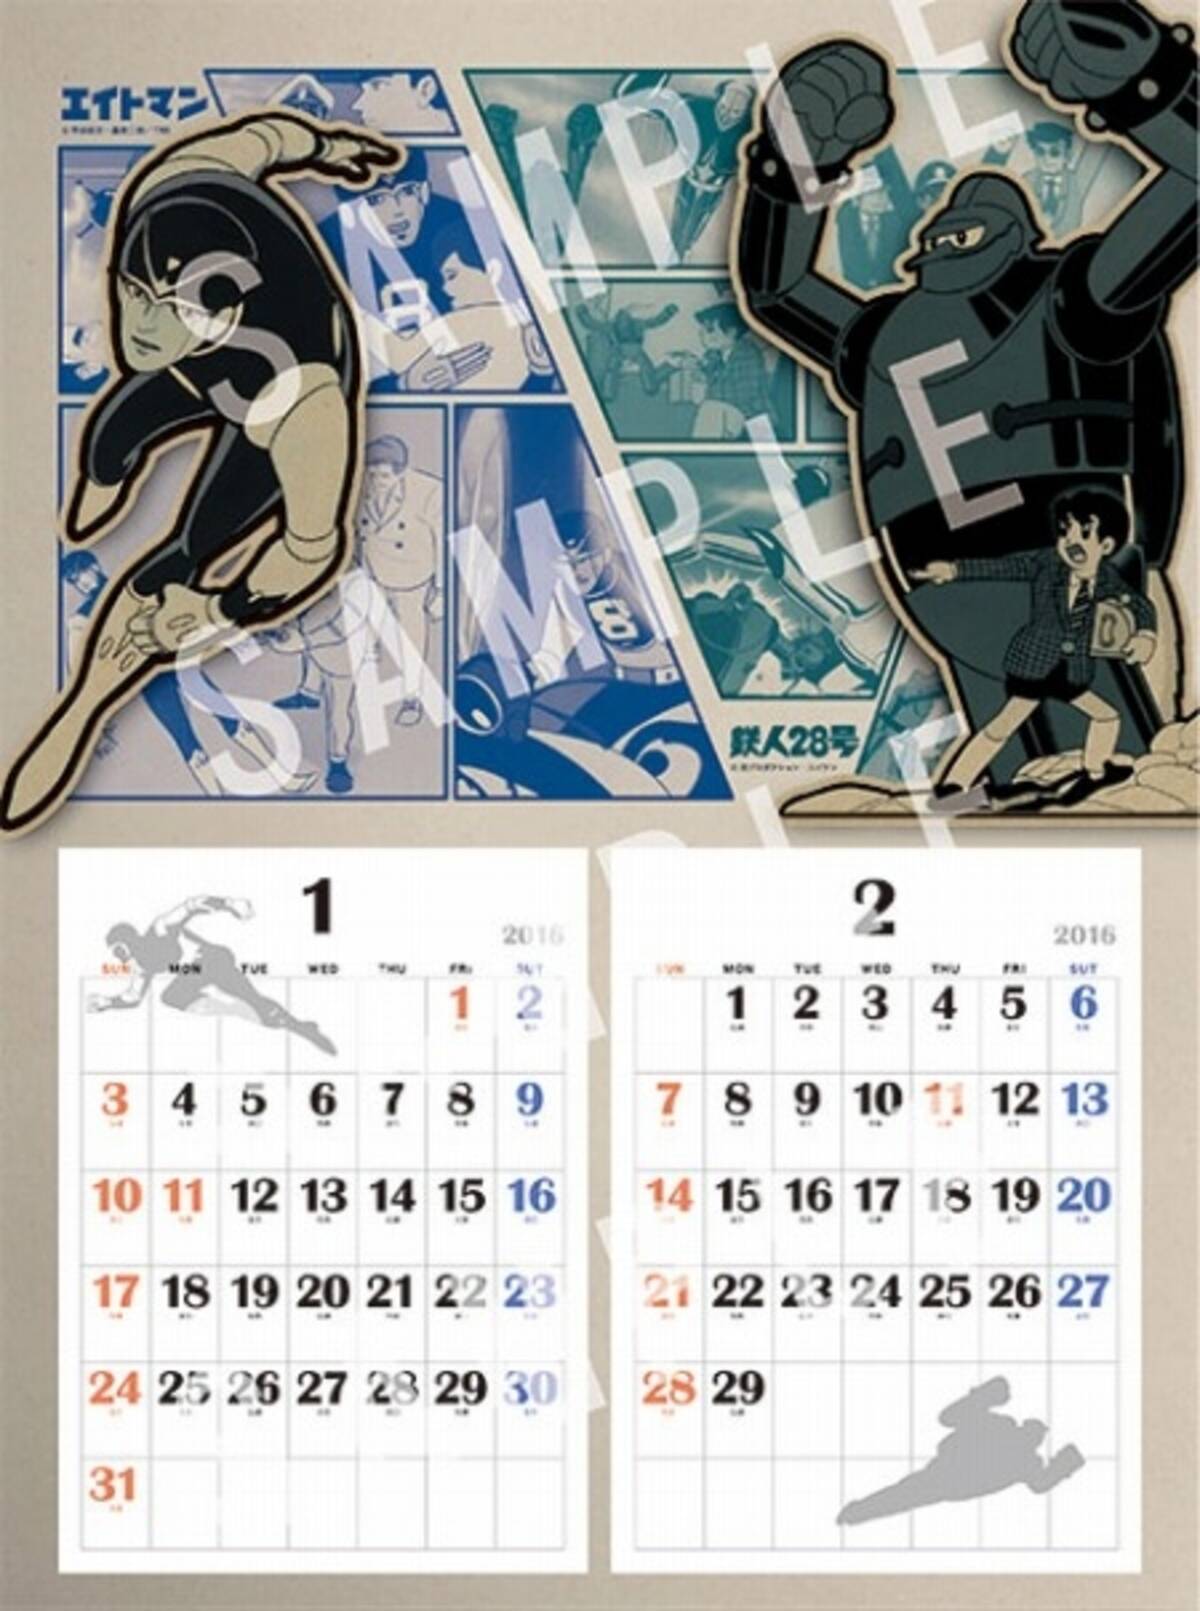 エイケンの16年カレンダー 鉄人28号 エイトマン 等tvアニメ黎明期のヒーロー集結 15年9月24日 エキサイトニュース